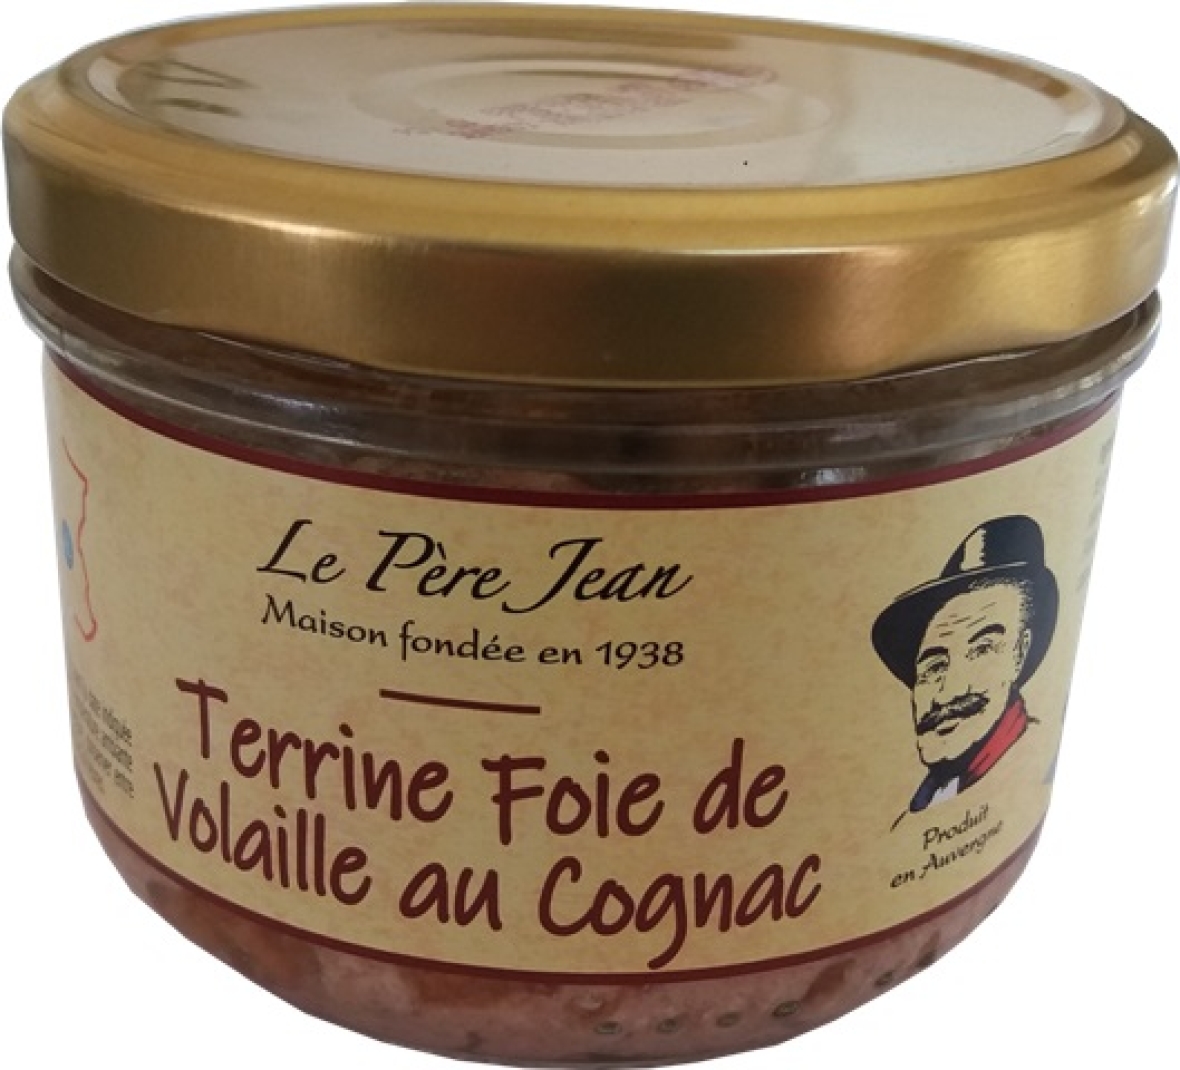 Terrines Artisanales du Cantal Terrine de foie de volaille au Cognac Financer voyage scolaire